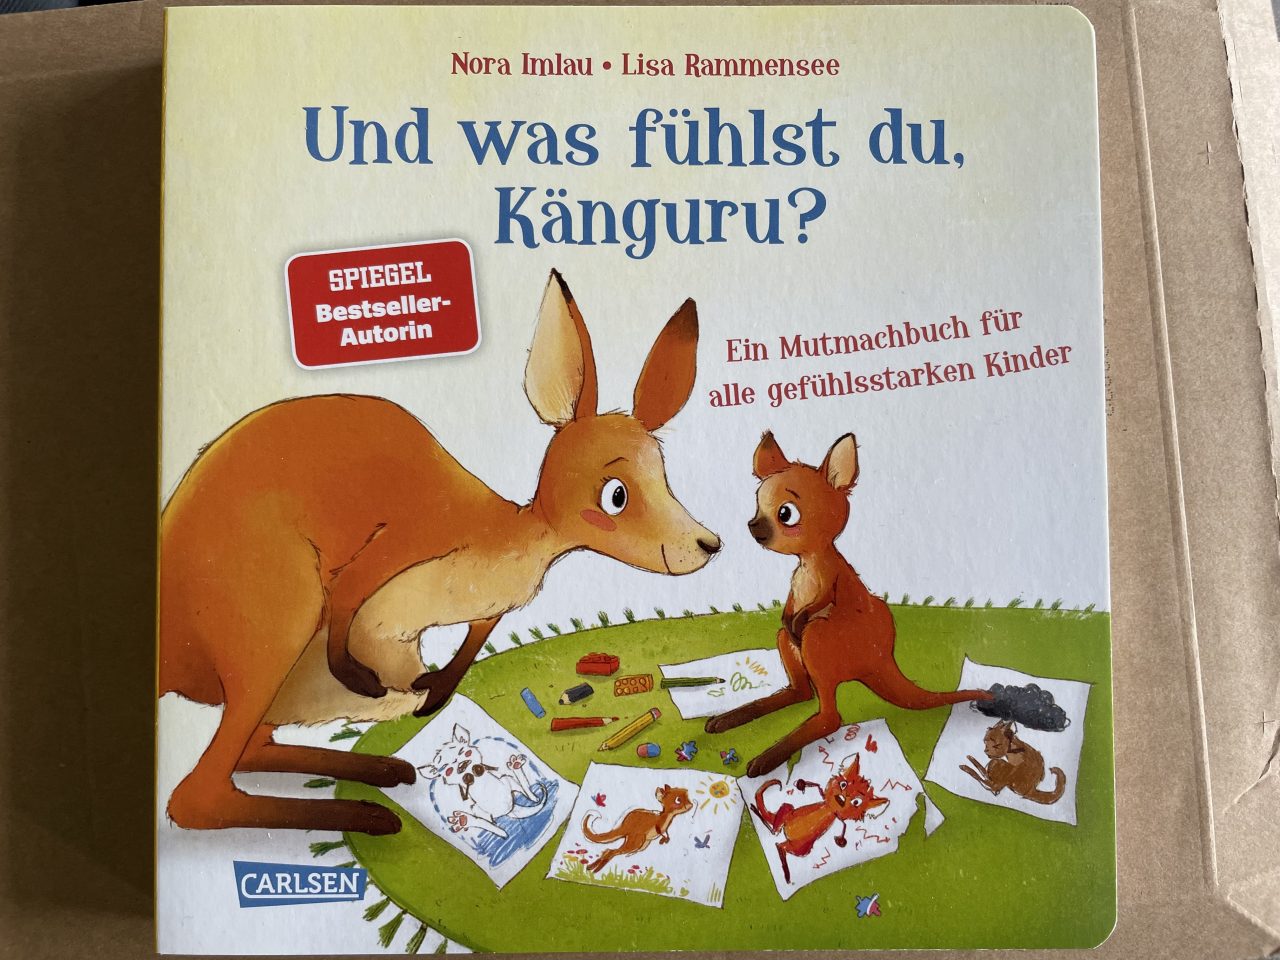 Und was fühlst du, Känguru? - Kinderbuch auf einem Briefumschlag